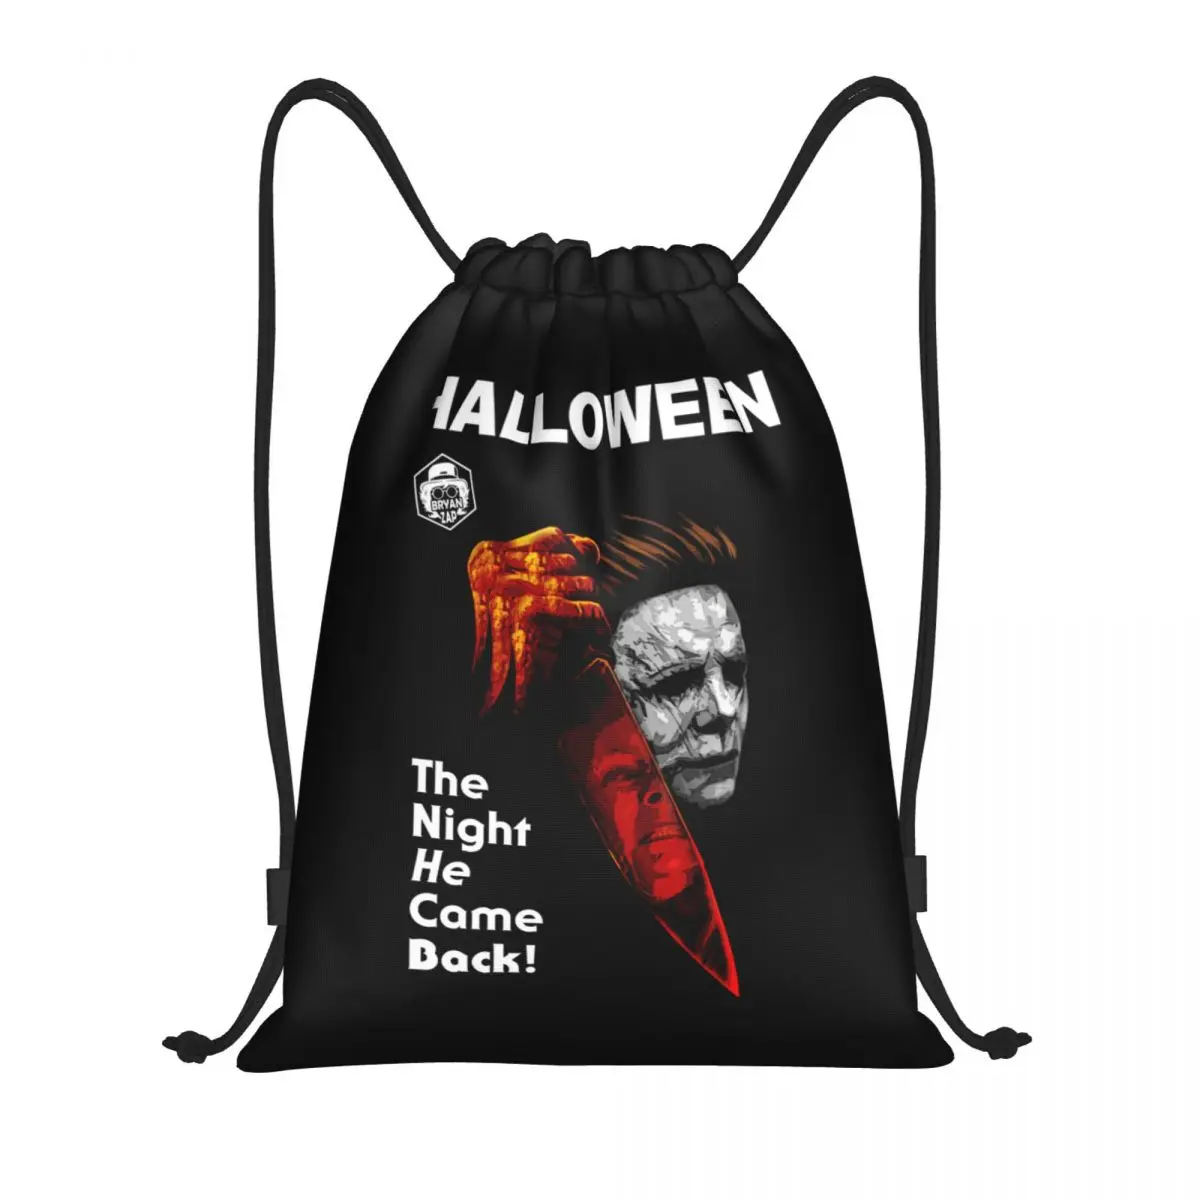 

Рюкзак на шнурке с ножами Майкла Майерса для женщин и мужчин, спортивный рюкзак для тренажерного зала, складной рюкзак для Хэллоуина, сумка для покупок